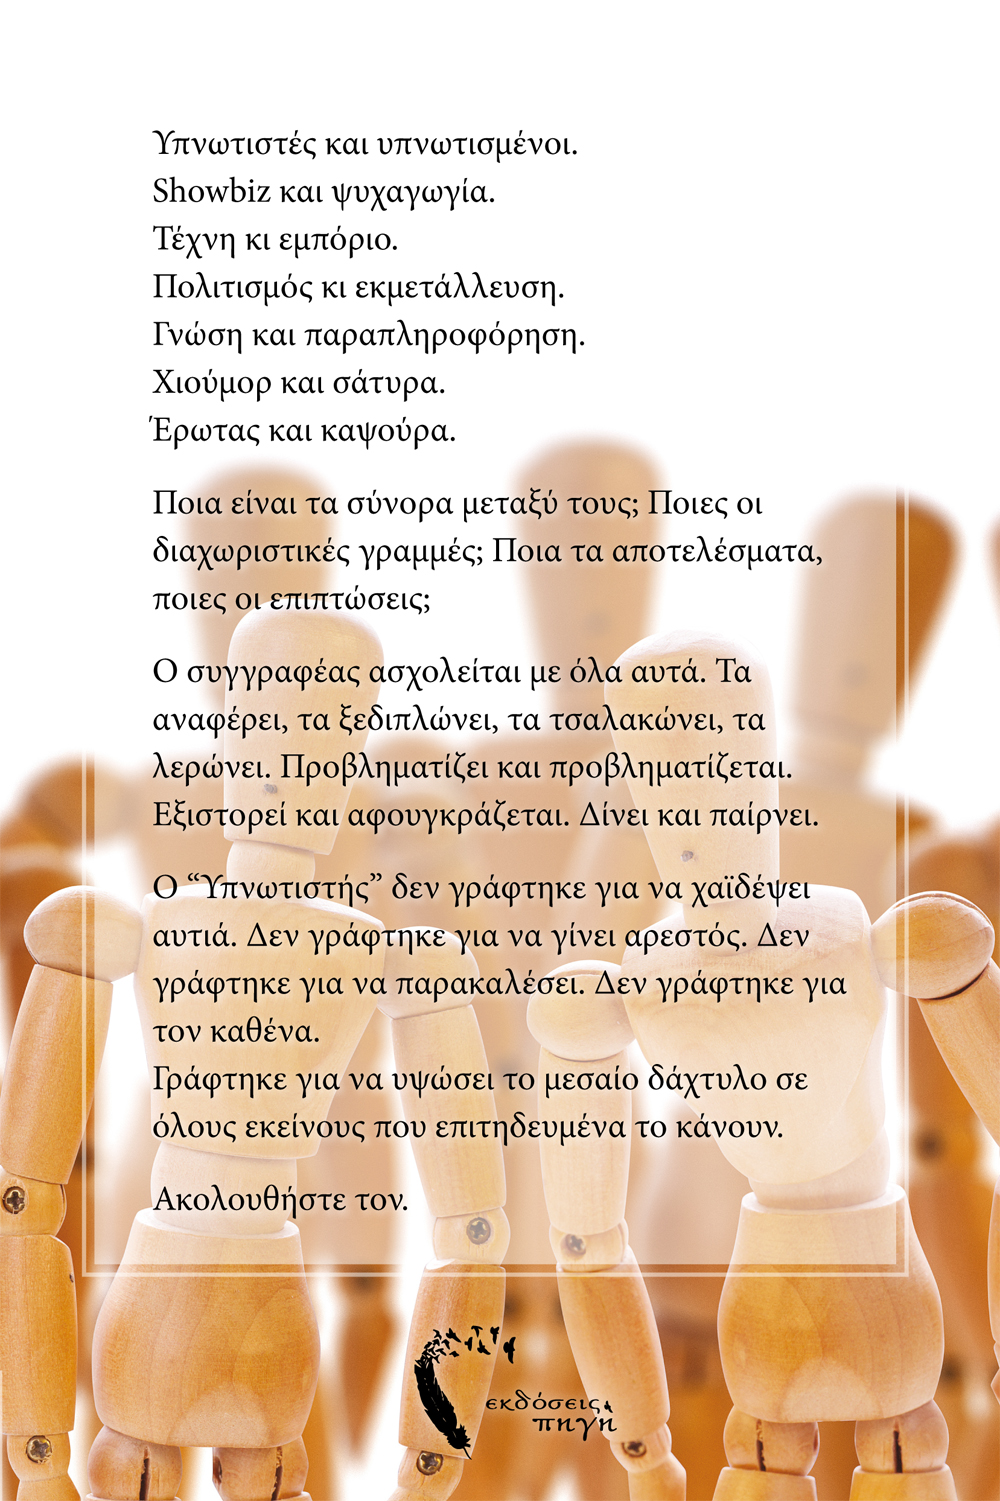 Υπνωτιστής, Γιάννης Βεργιαννίδης, Εκδόσεις Πηγή - www.pigi.gr